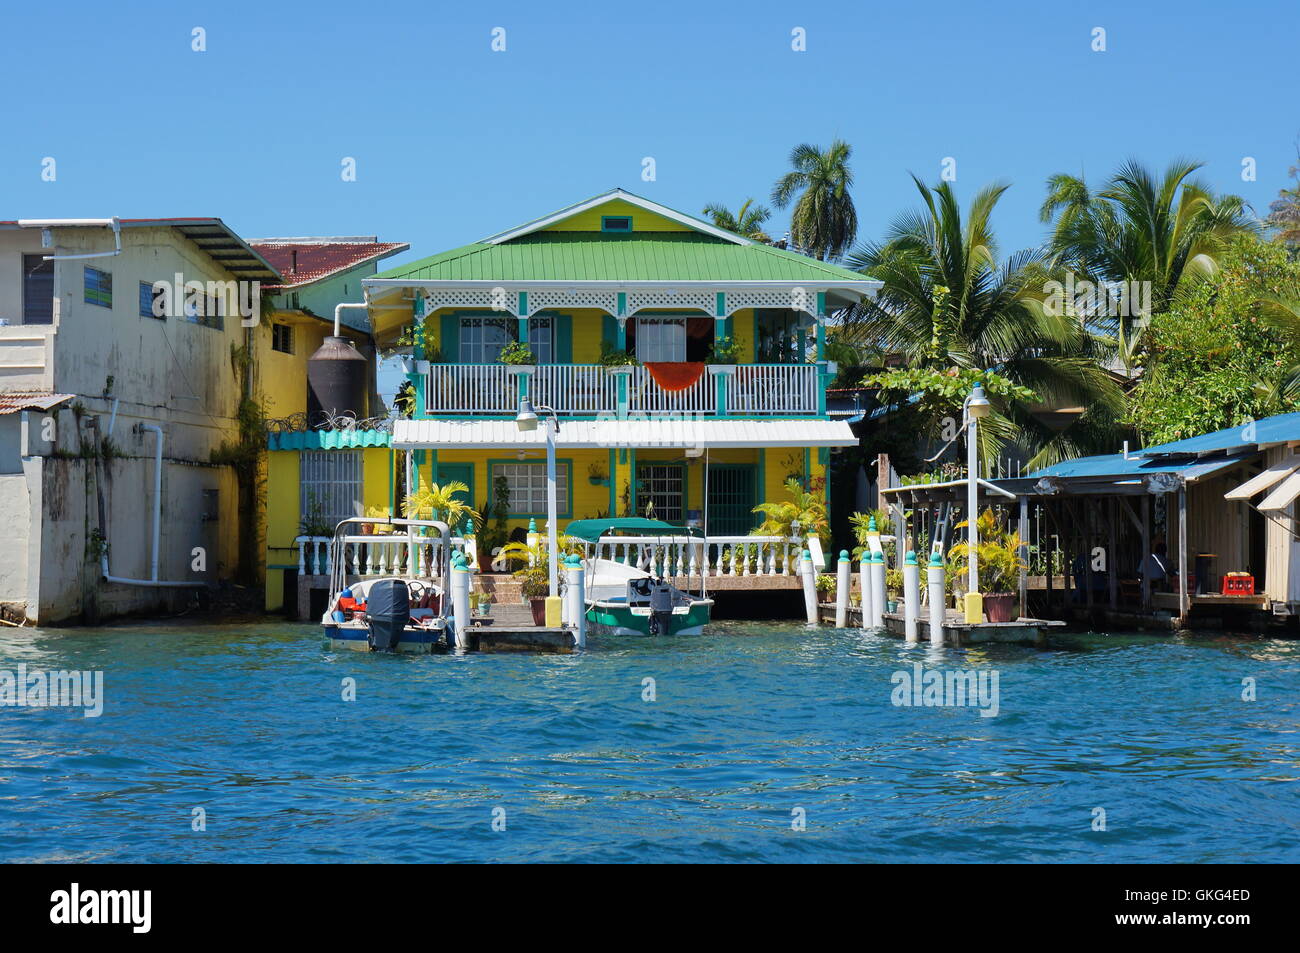 Karibik Haus am Wasser mit Booten am Dock, Panama, Mittelamerika Stockfoto